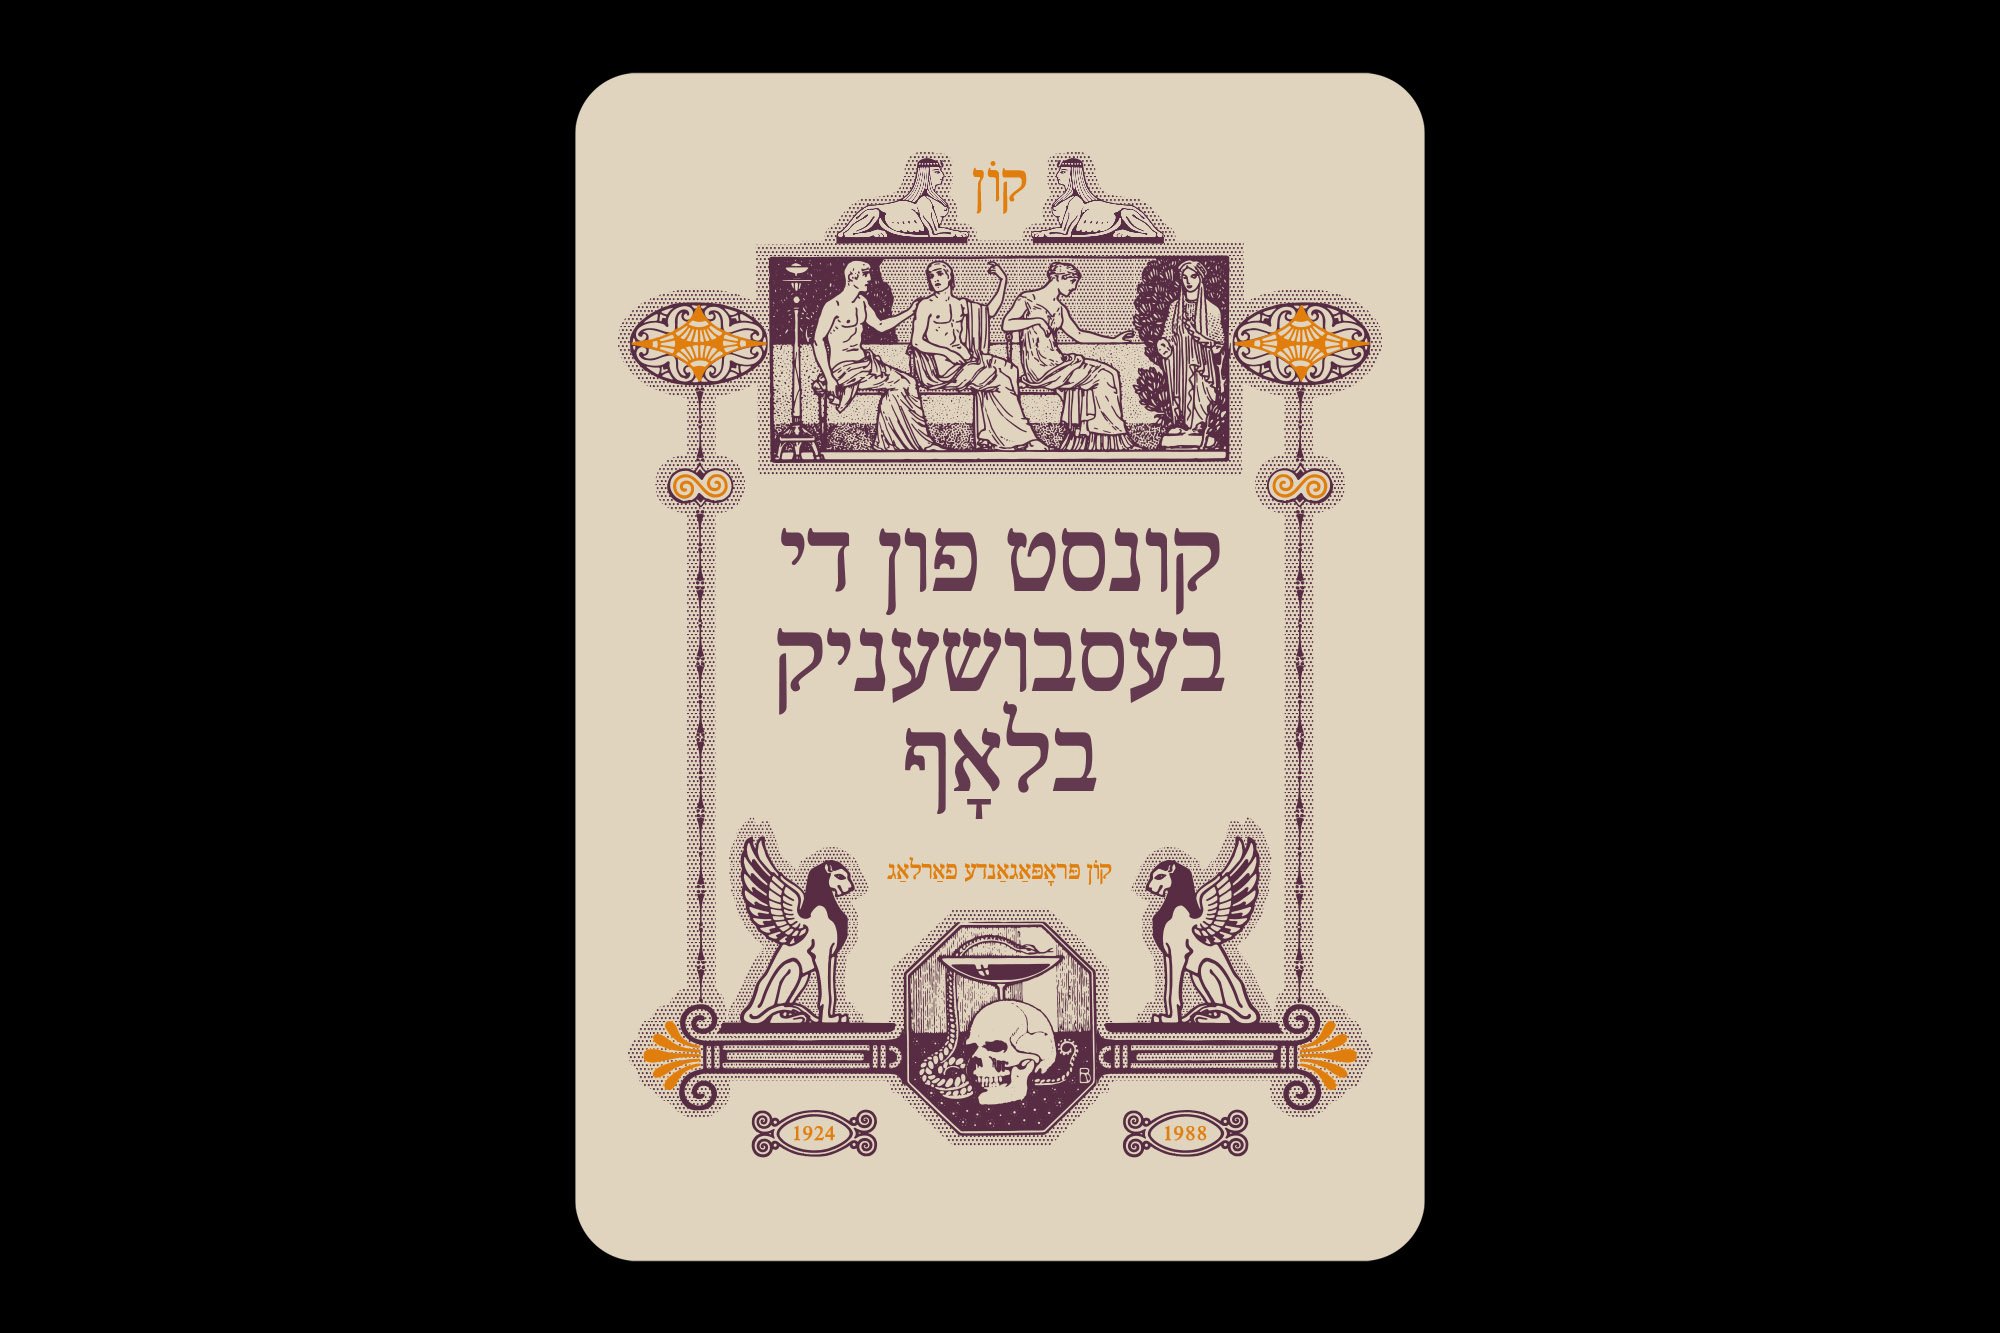  Back design with Yiddish type saying “Art of the Shameless Bluff” 